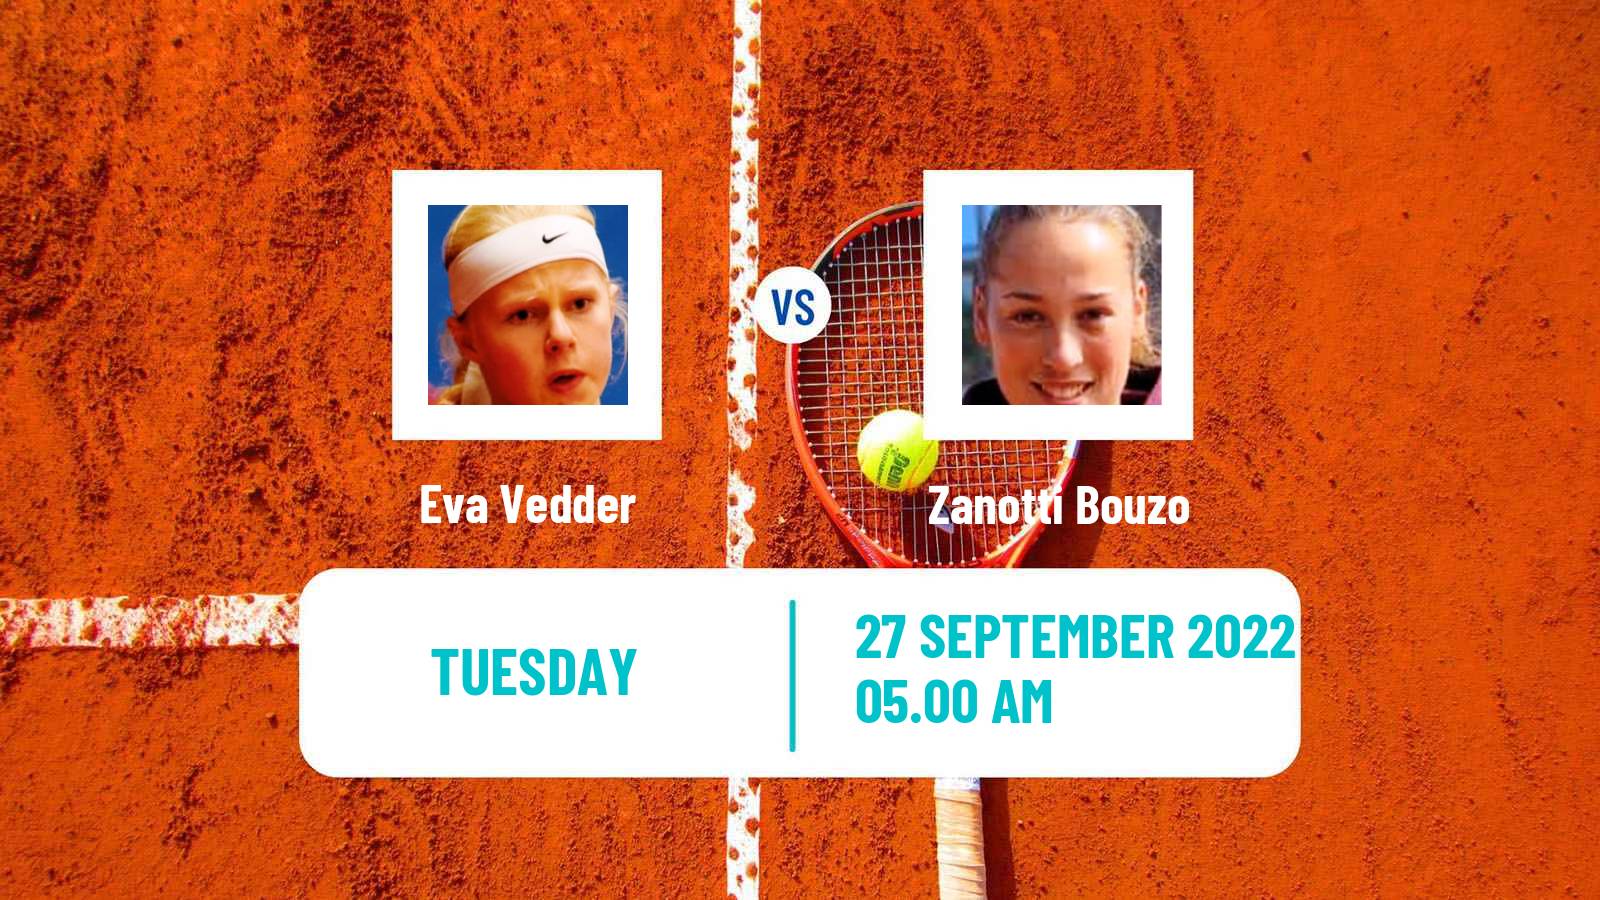 Tennis ITF Tournaments Eva Vedder - Zanotti Bouzo